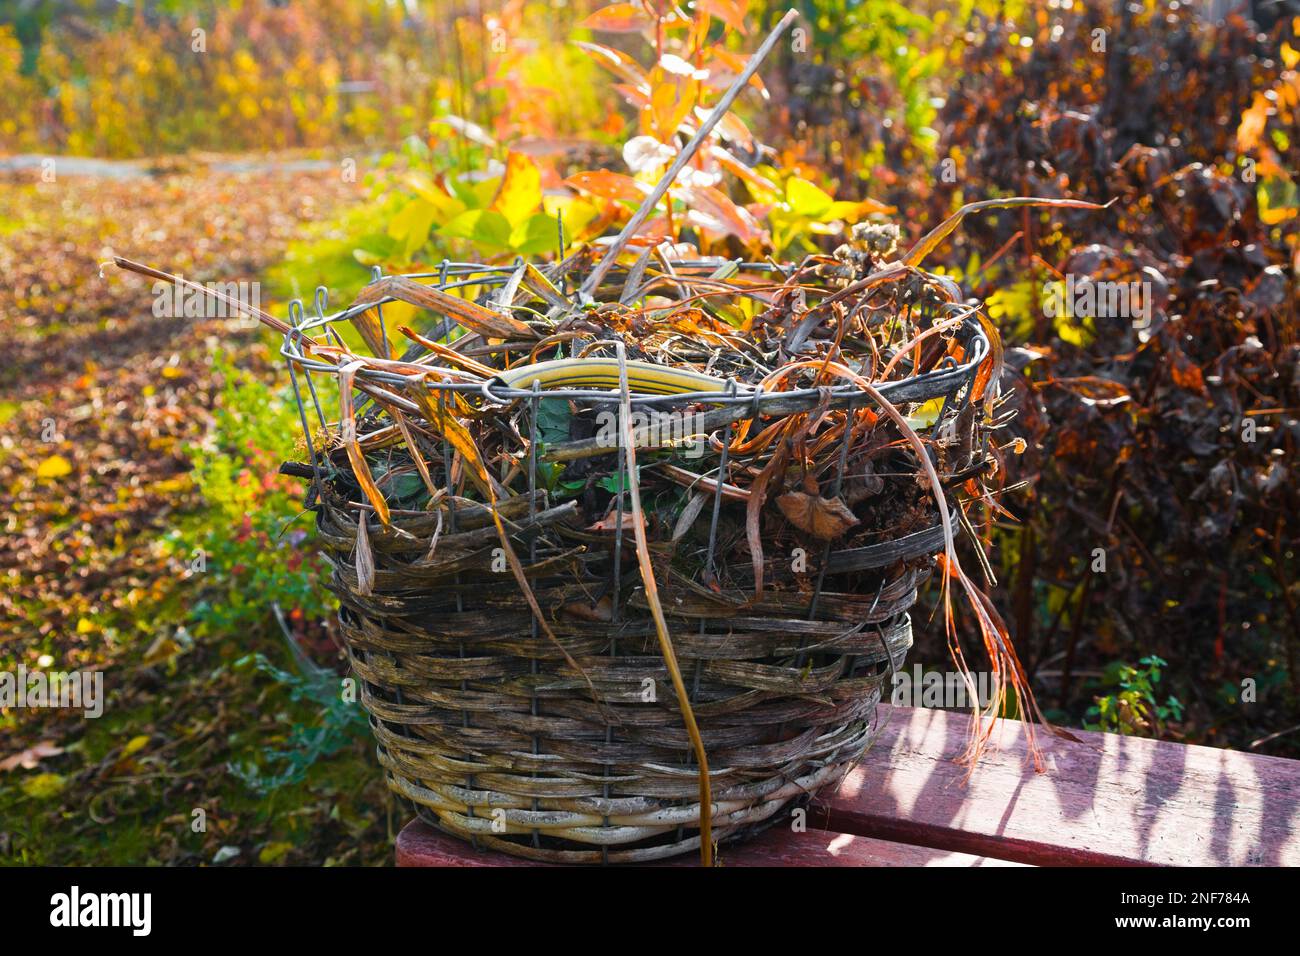 Material vegetal para compost en una cesta de mimbre Foto de stock